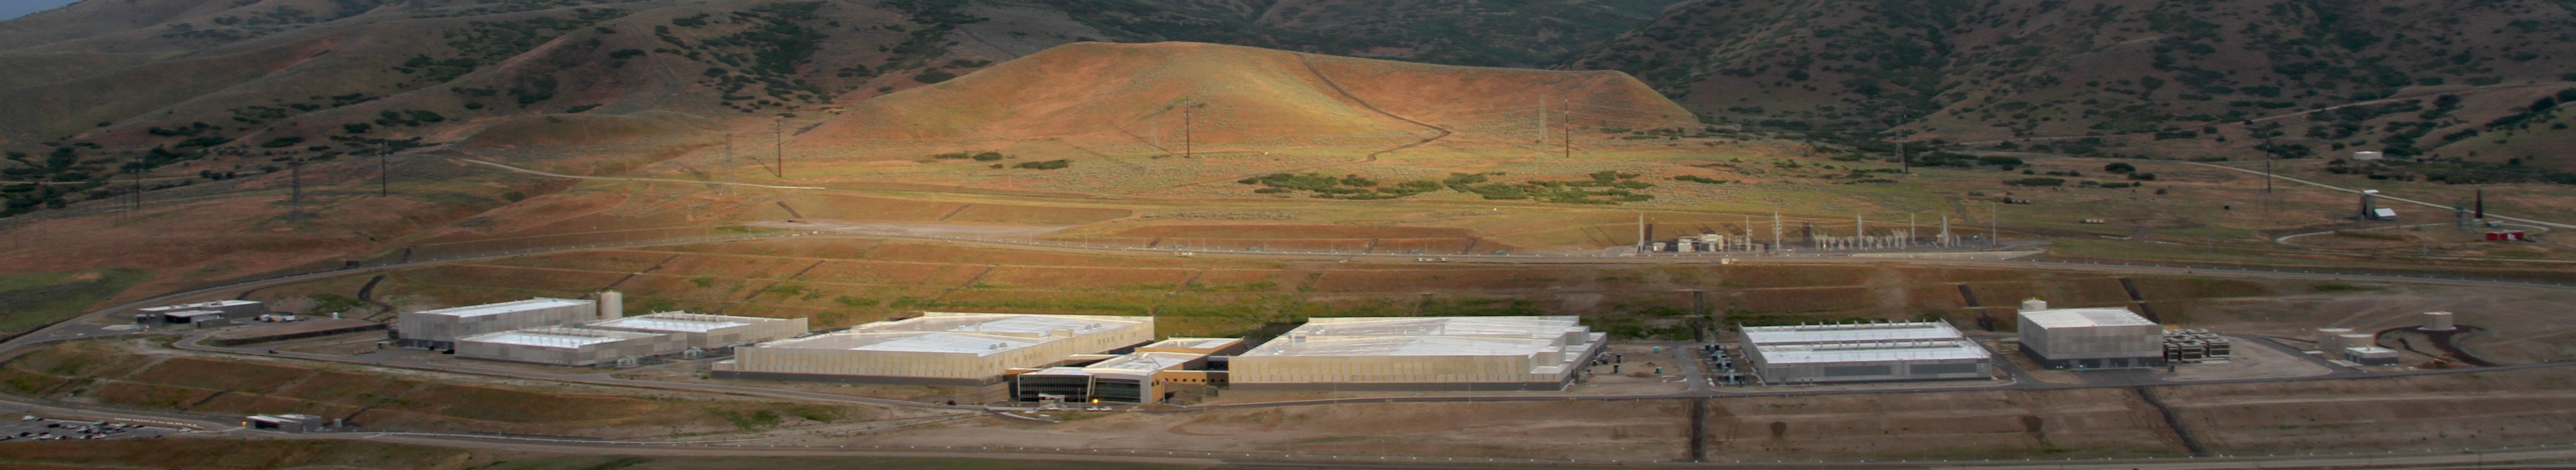 NSA Utah Data Center photo by EFF - June 2014 - taken from blimp